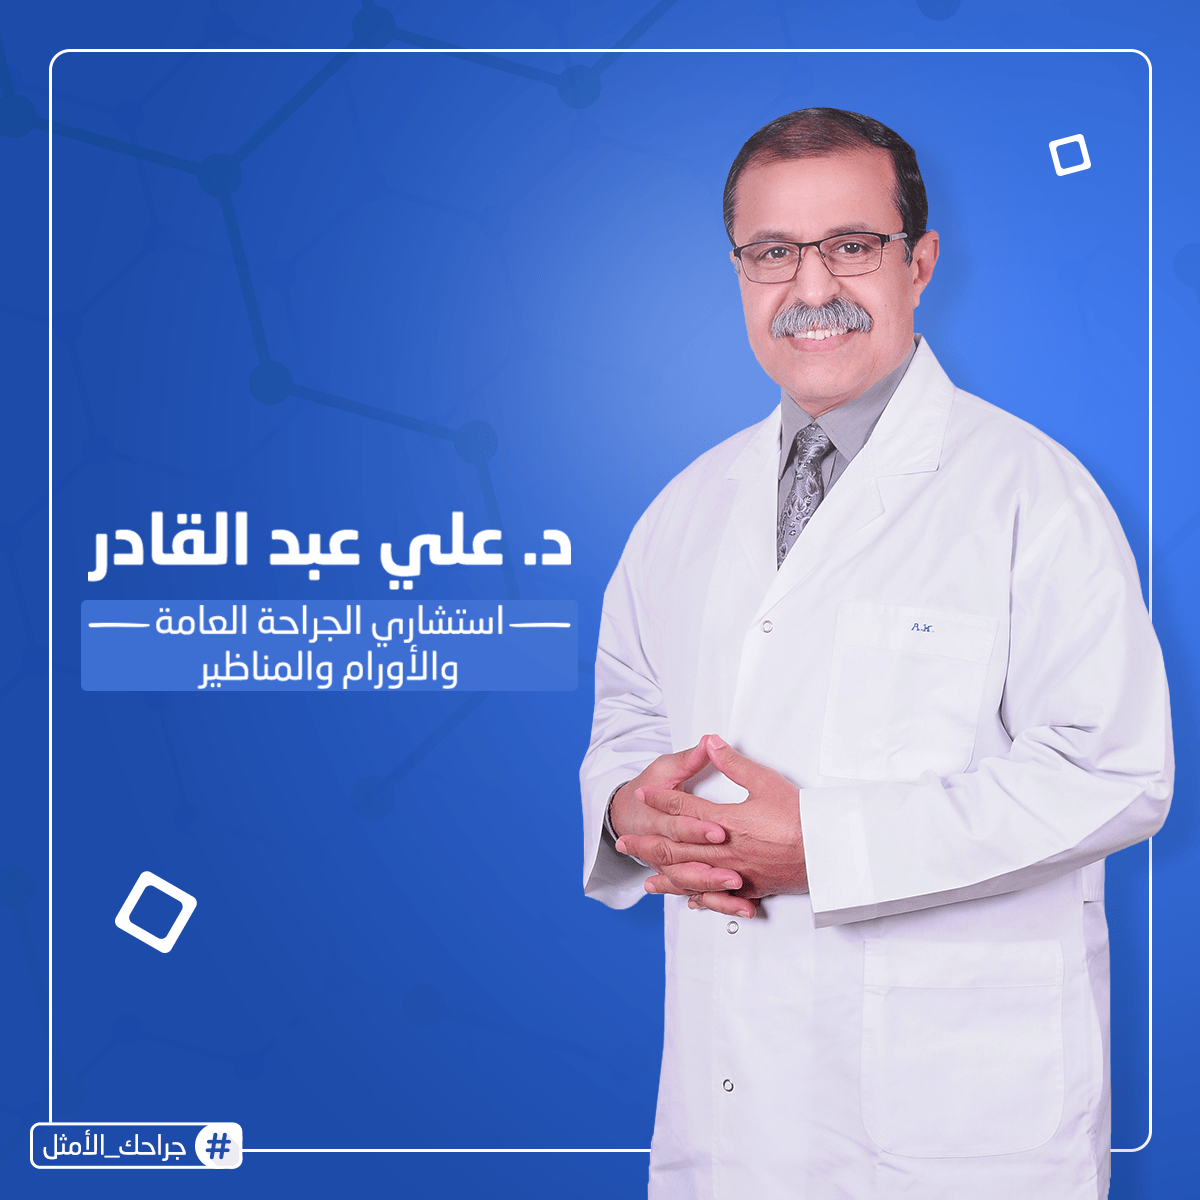 Dr. Aly Abdel Kader